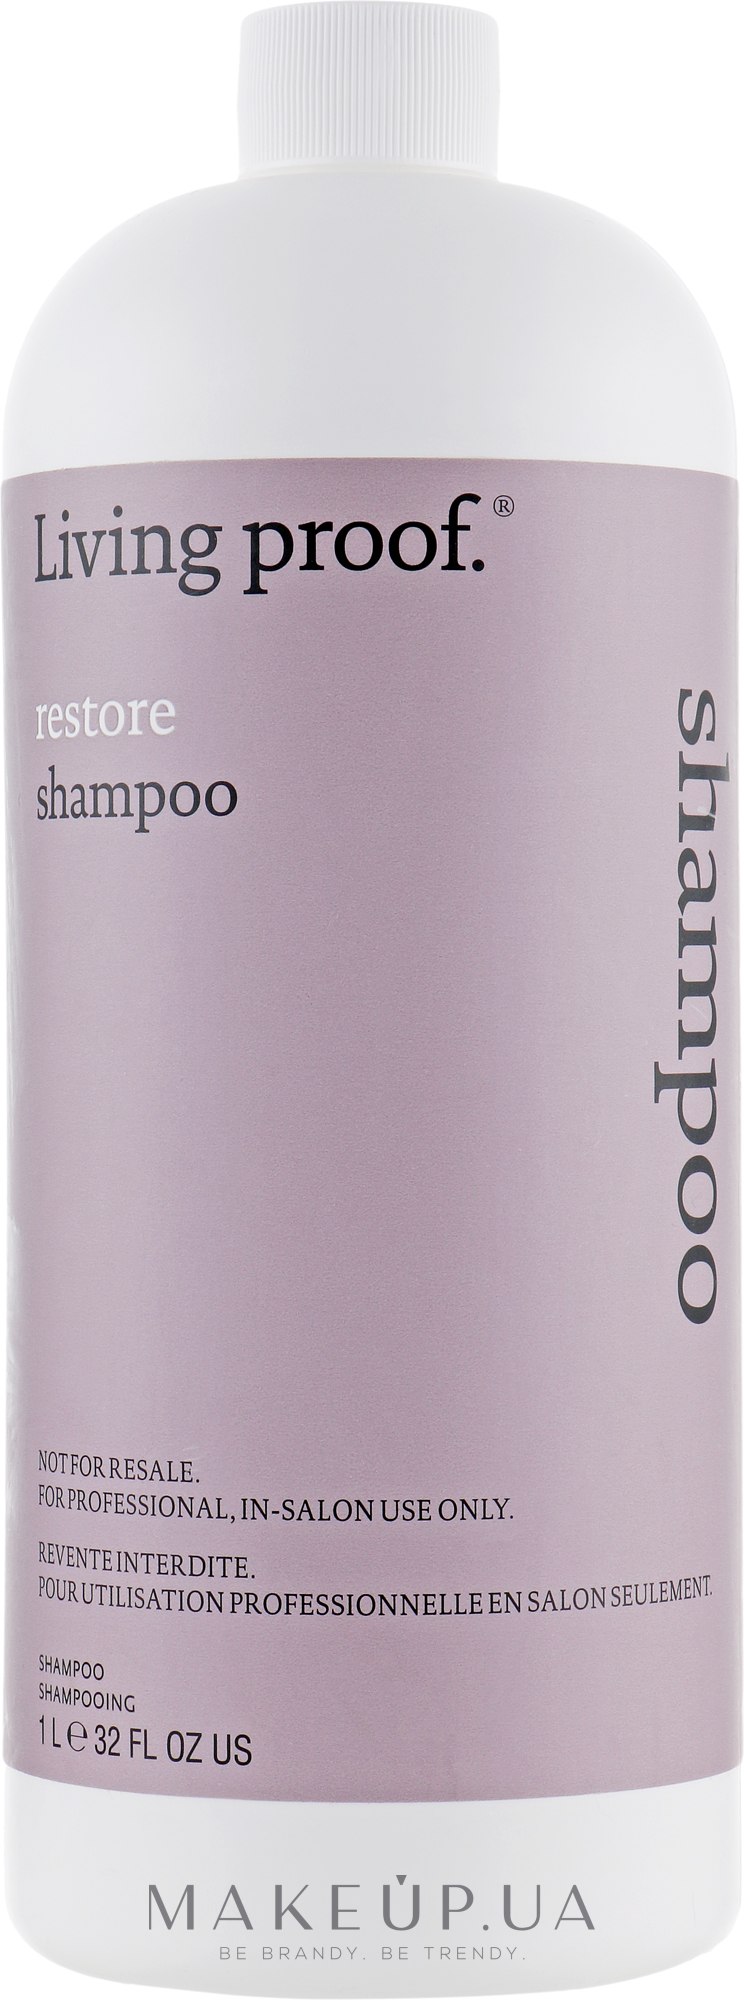 Восстанавливающий шампунь для сухих или поврежденных волос - Living Proof Restore Shampoo — фото 1000ml